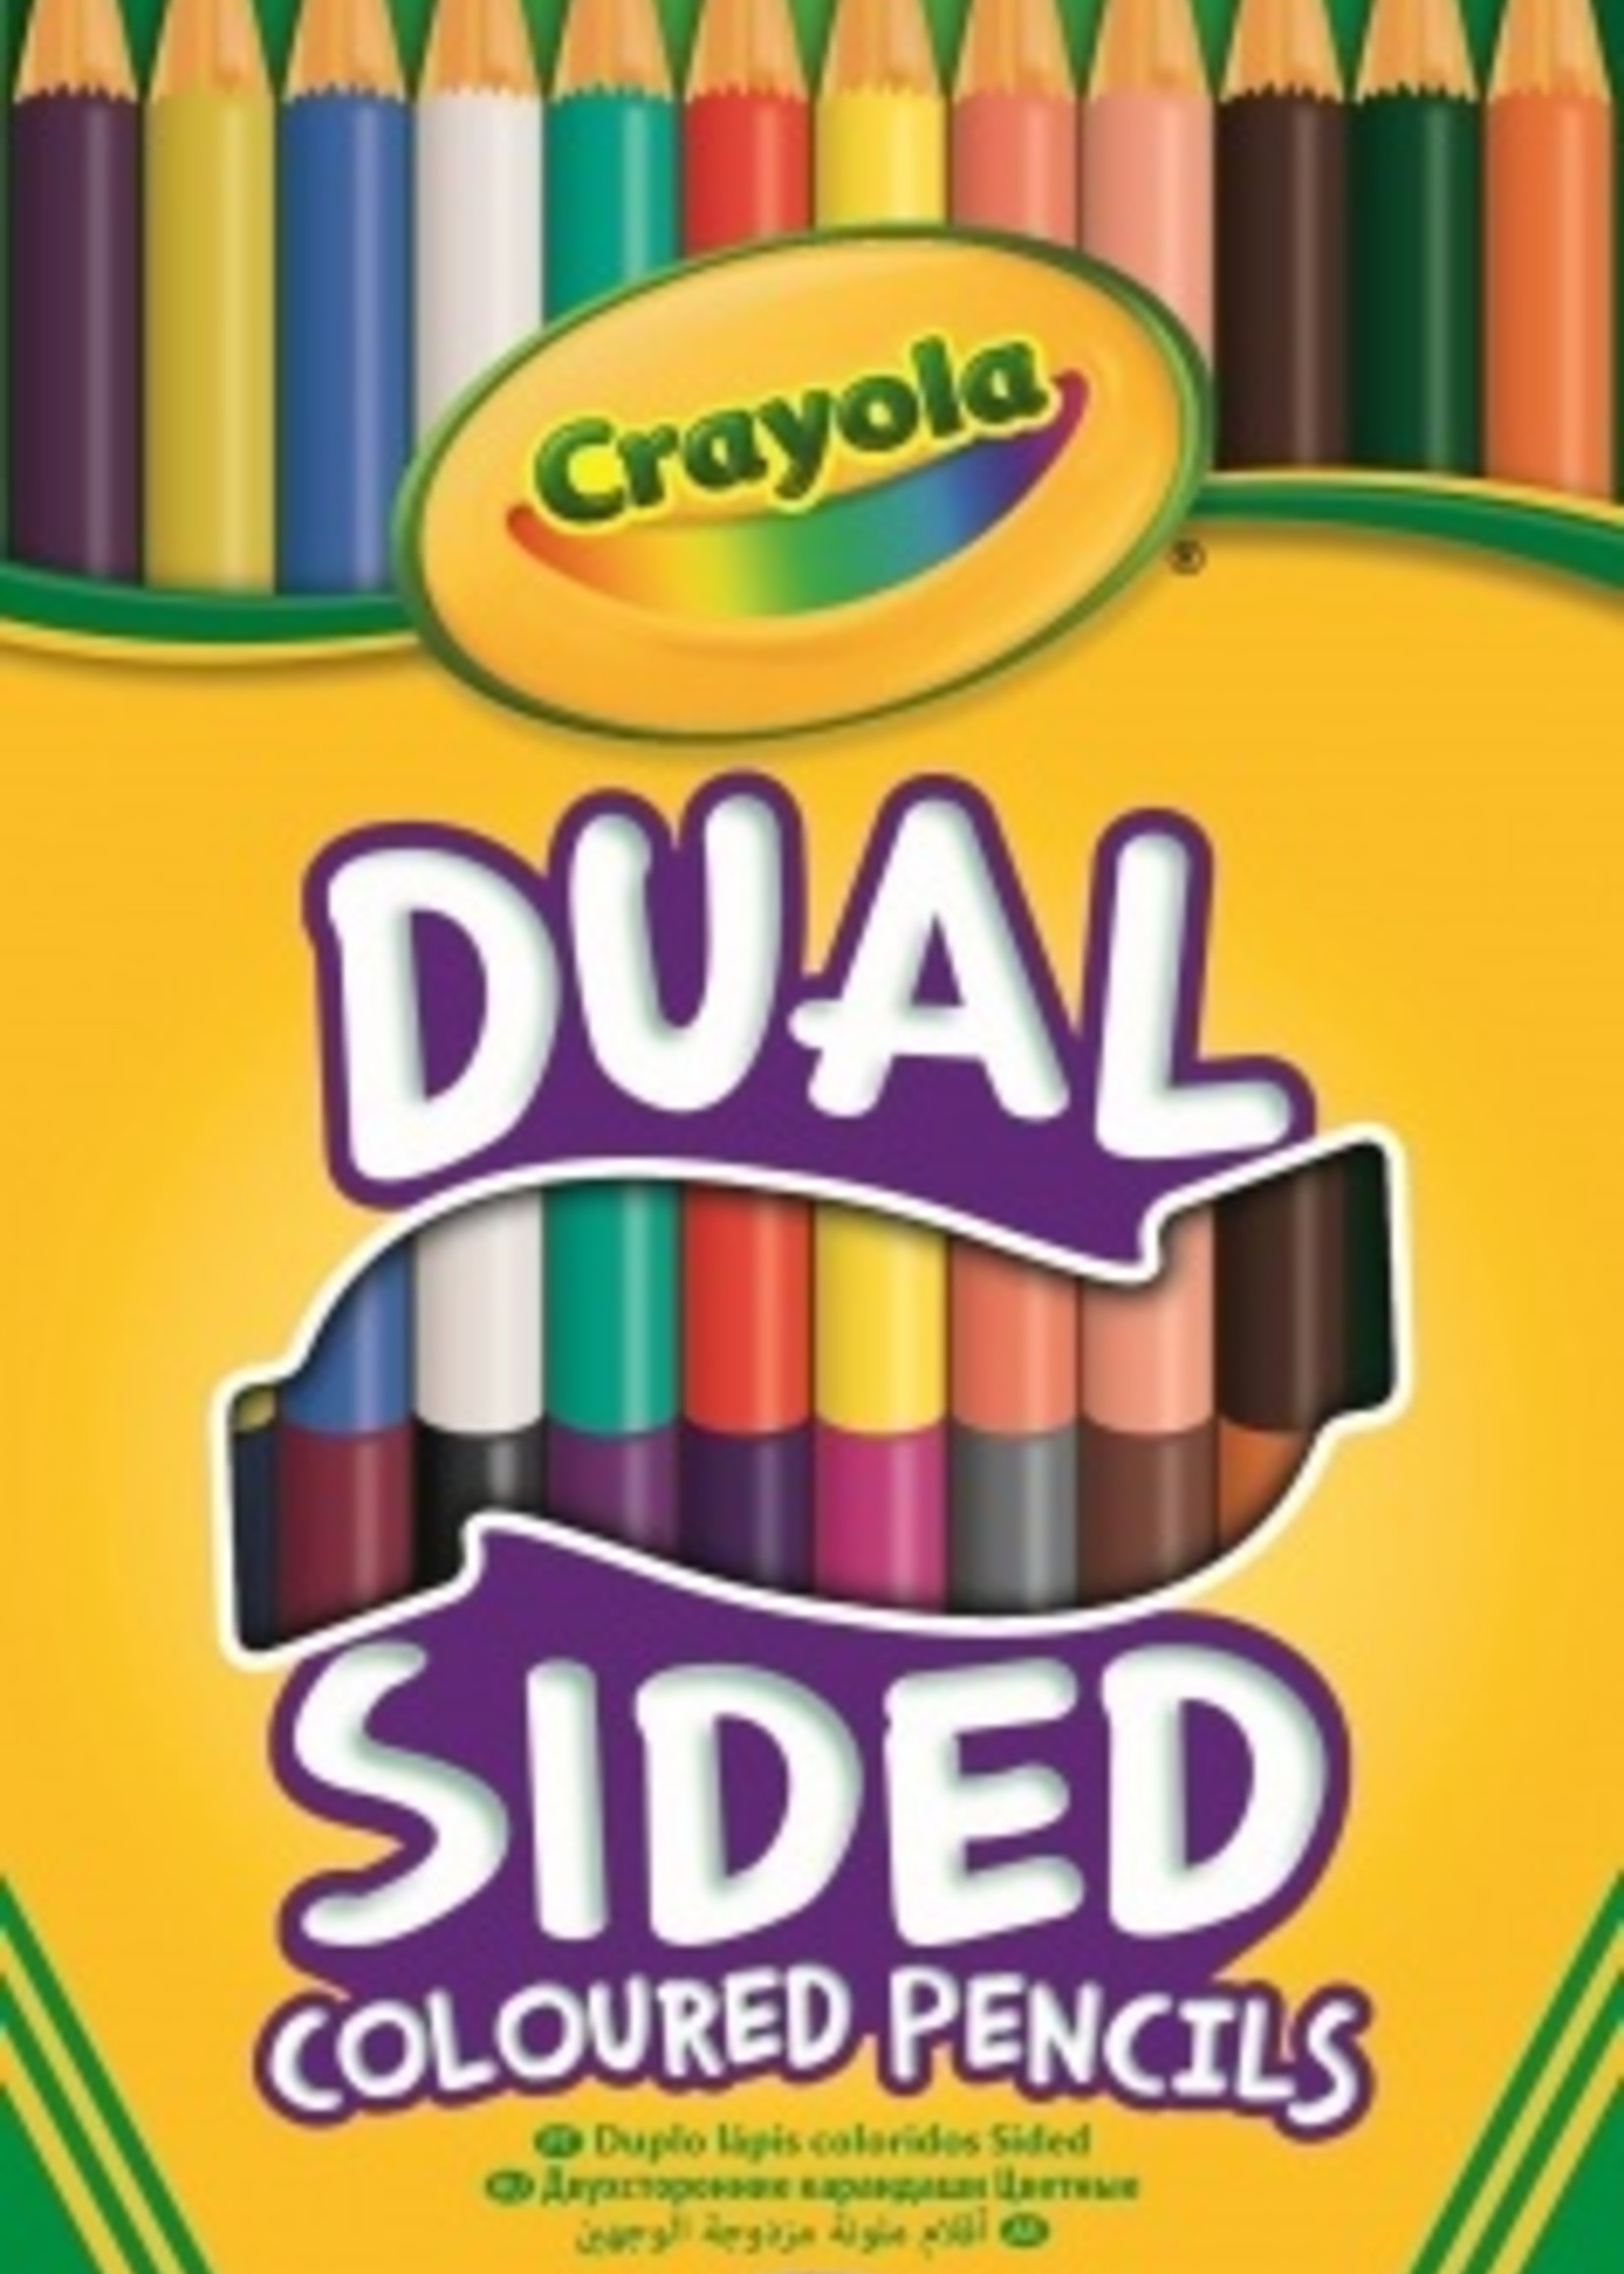 Crayola duo-kleurpotloden 12 stuks